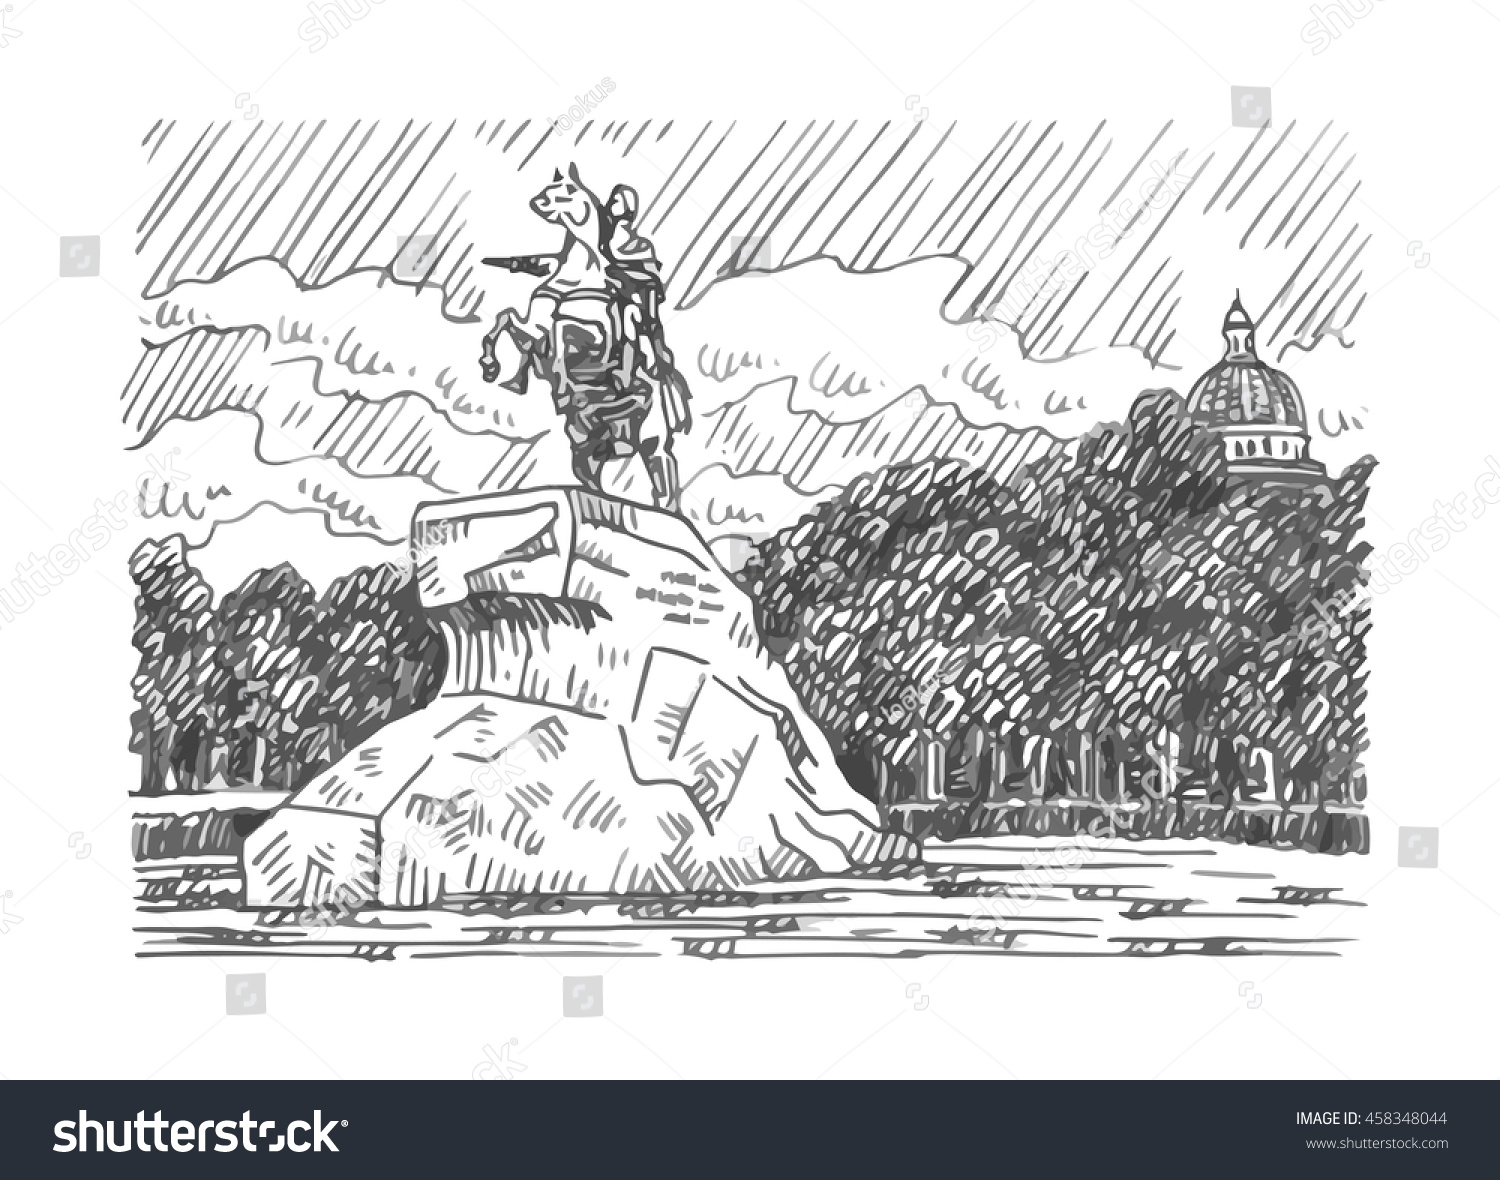 Памятник Петру 1 в Санкт-Петербурге медный всадник рисунок